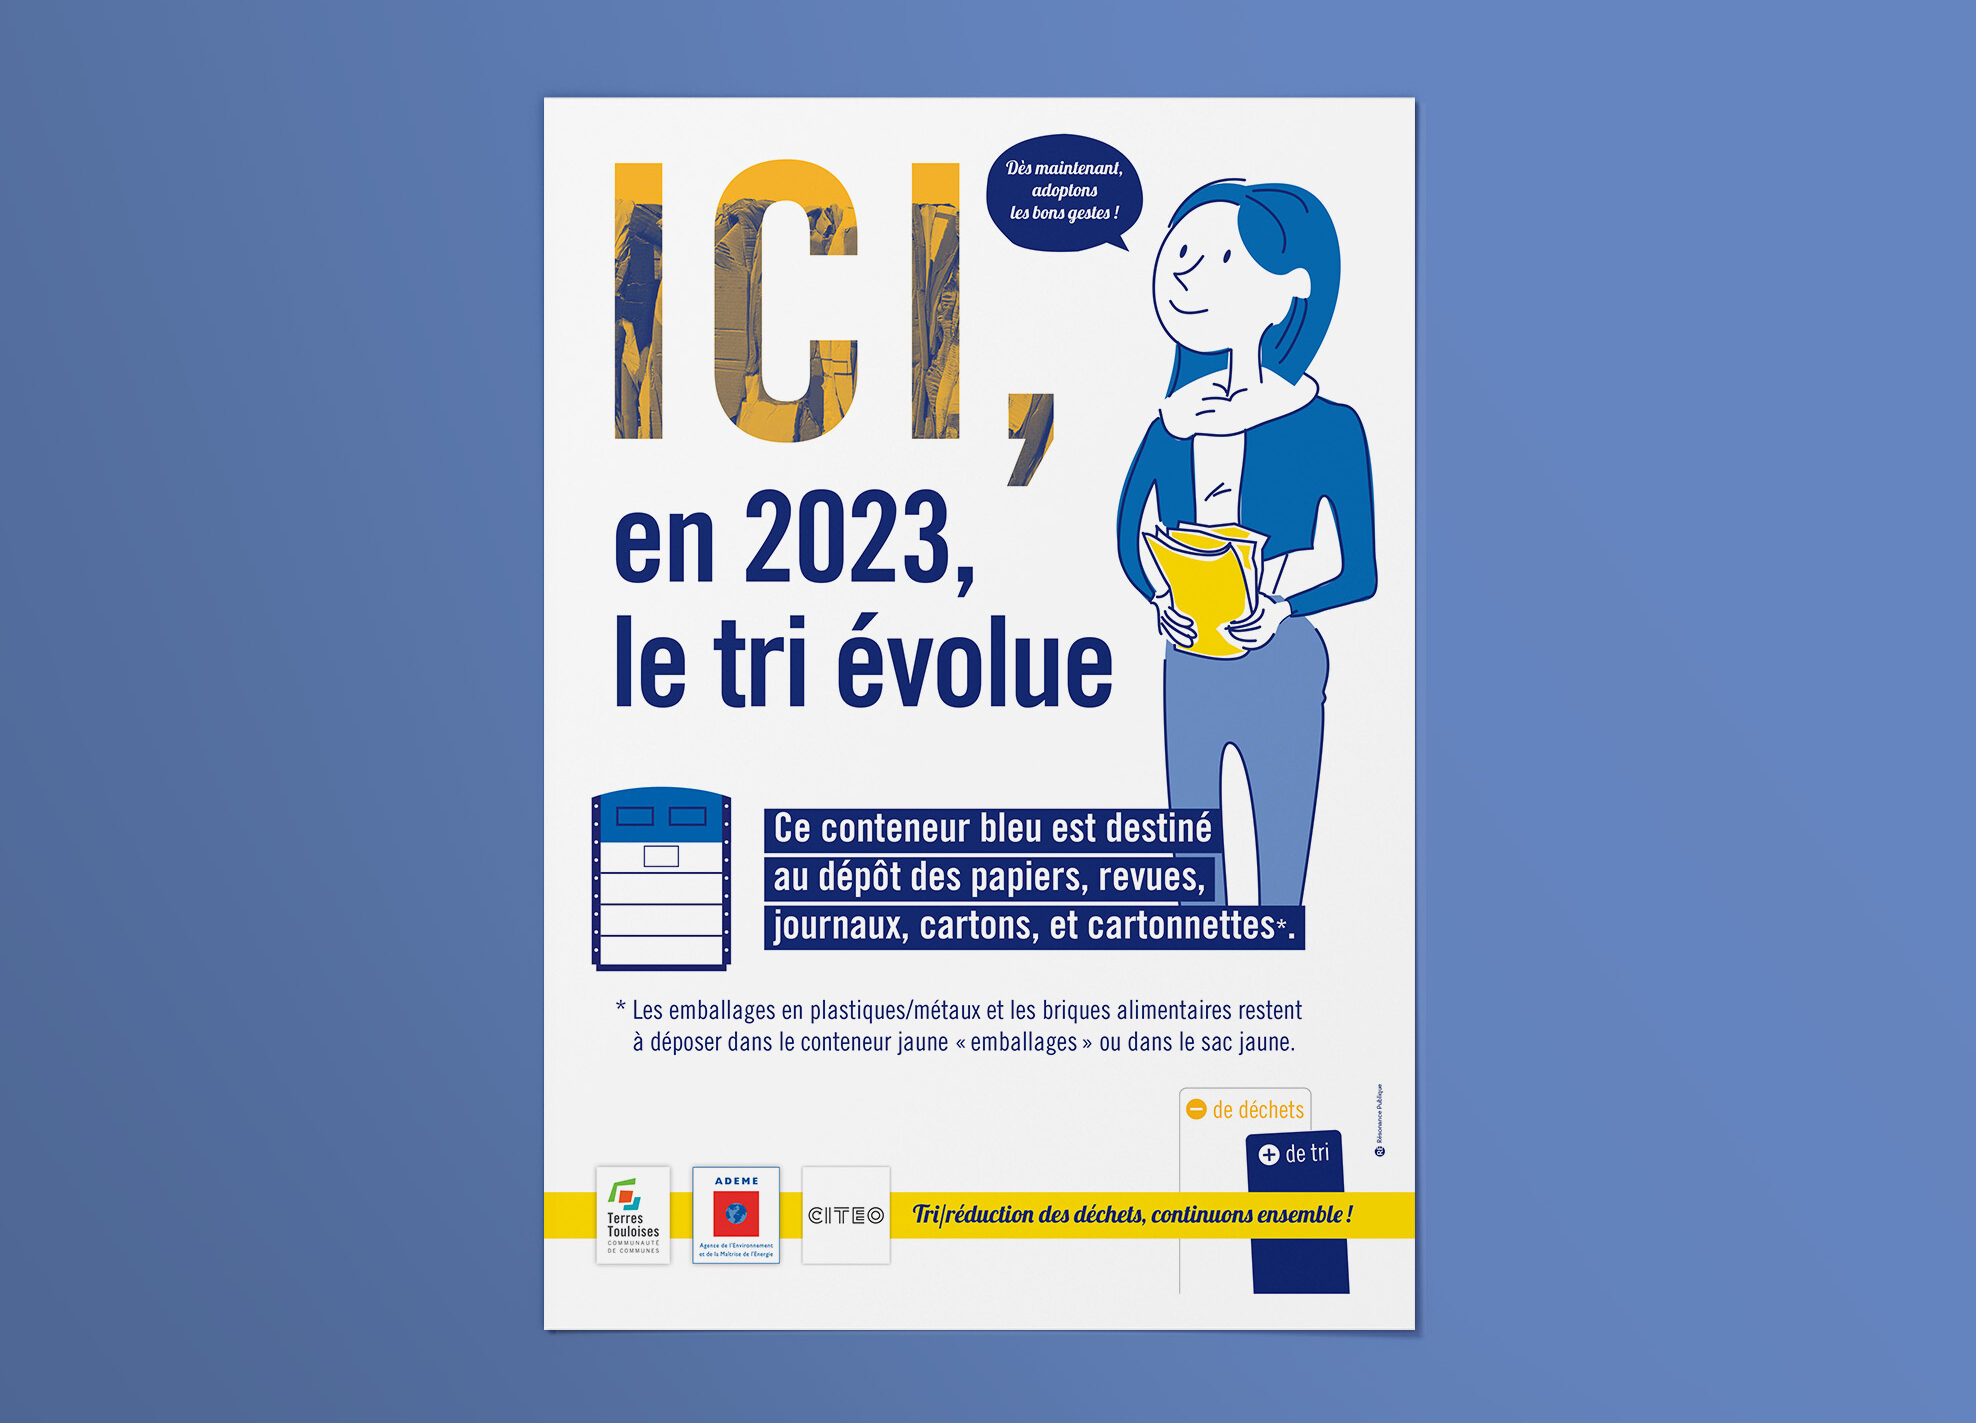 Communauté de communes Terres Touloises - Campagne 2022 : évolution des consignes de tri - Création graphique - Transition écologique